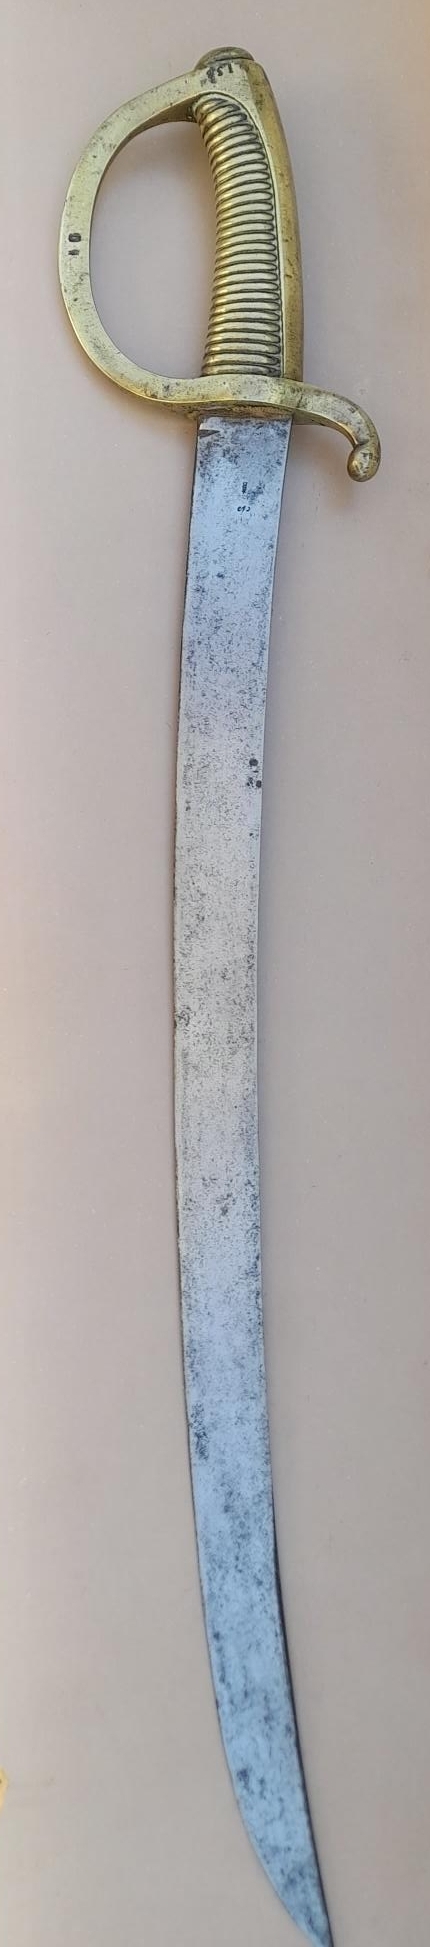 Un sabre briquet de Châtellerault en 1822 Qy7e